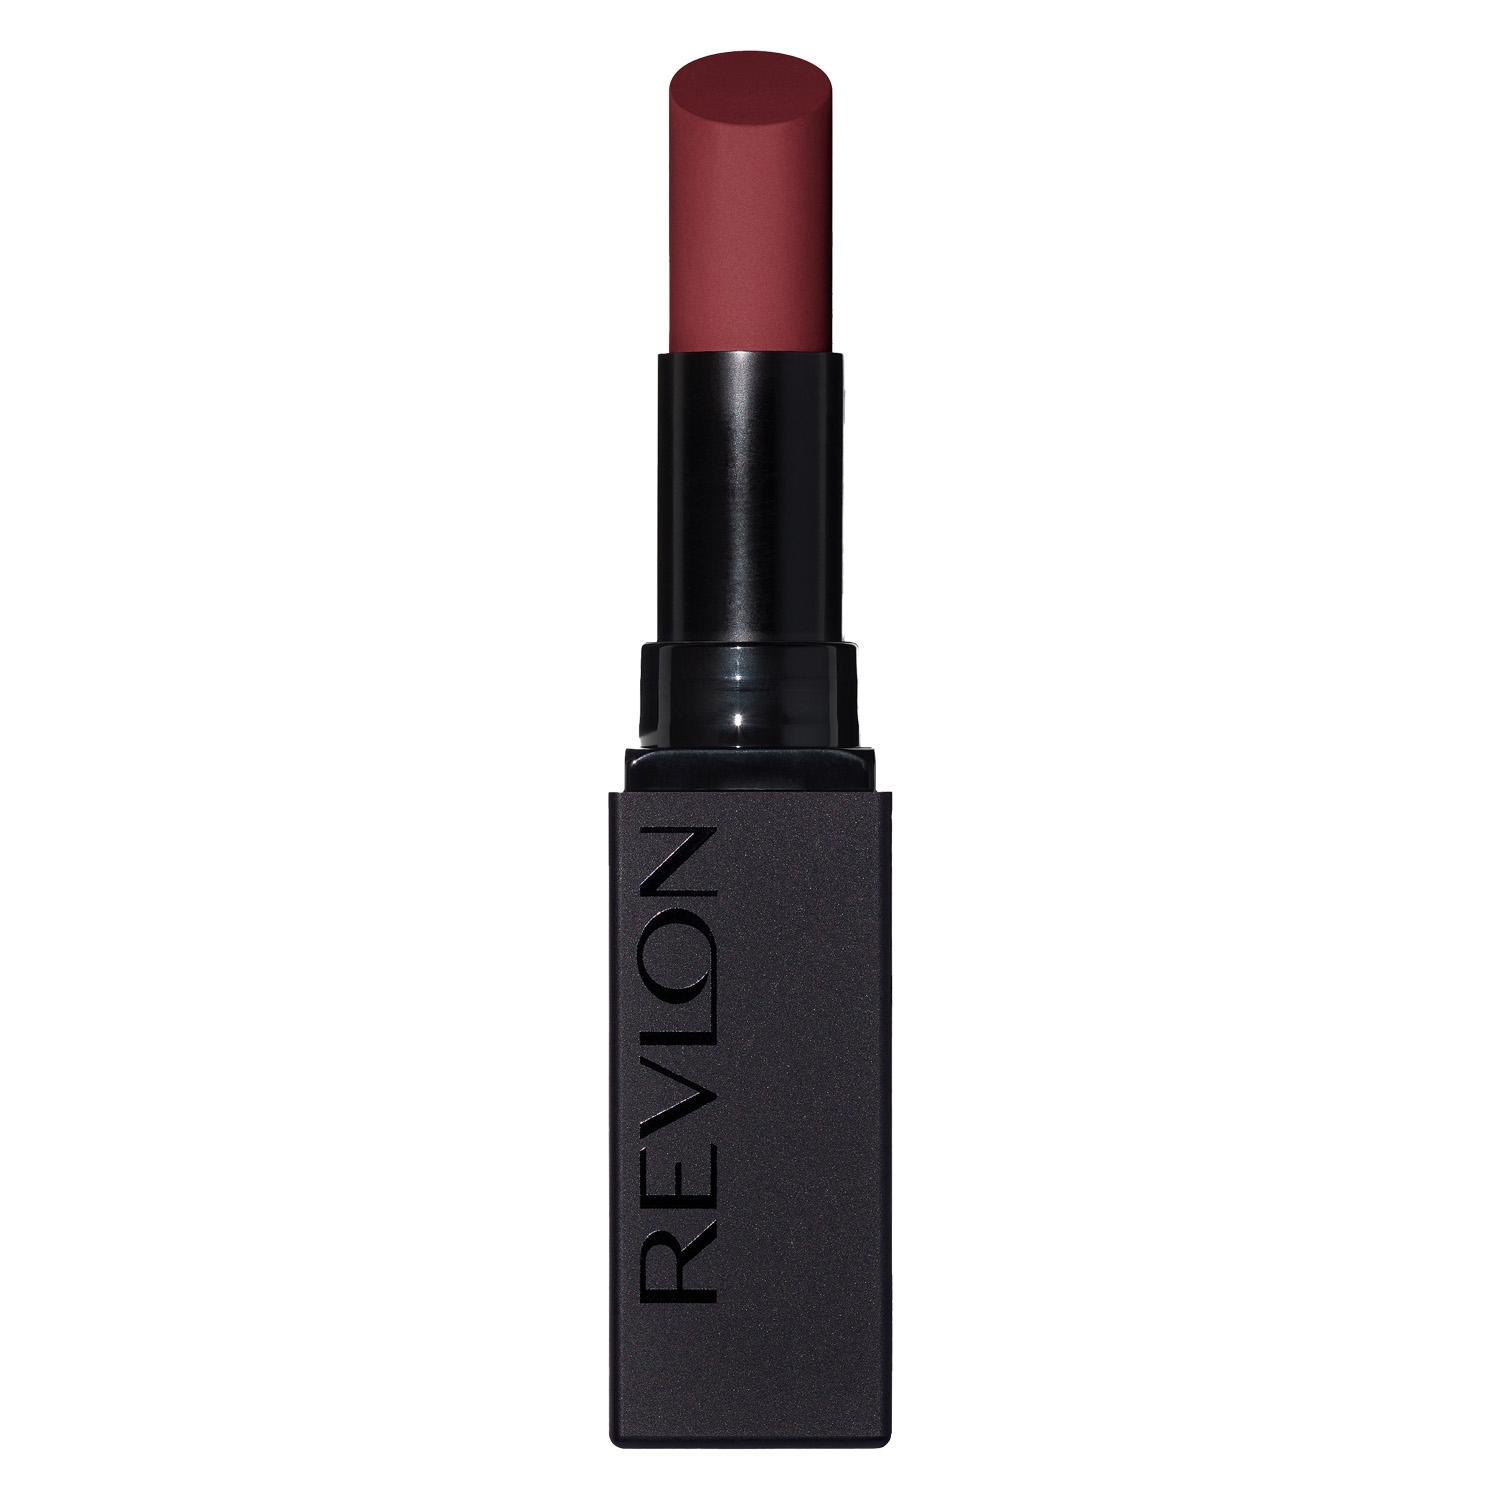 Produktbild von Revlon Lips - Colorstay Suede Ink Lipstick In the Zone